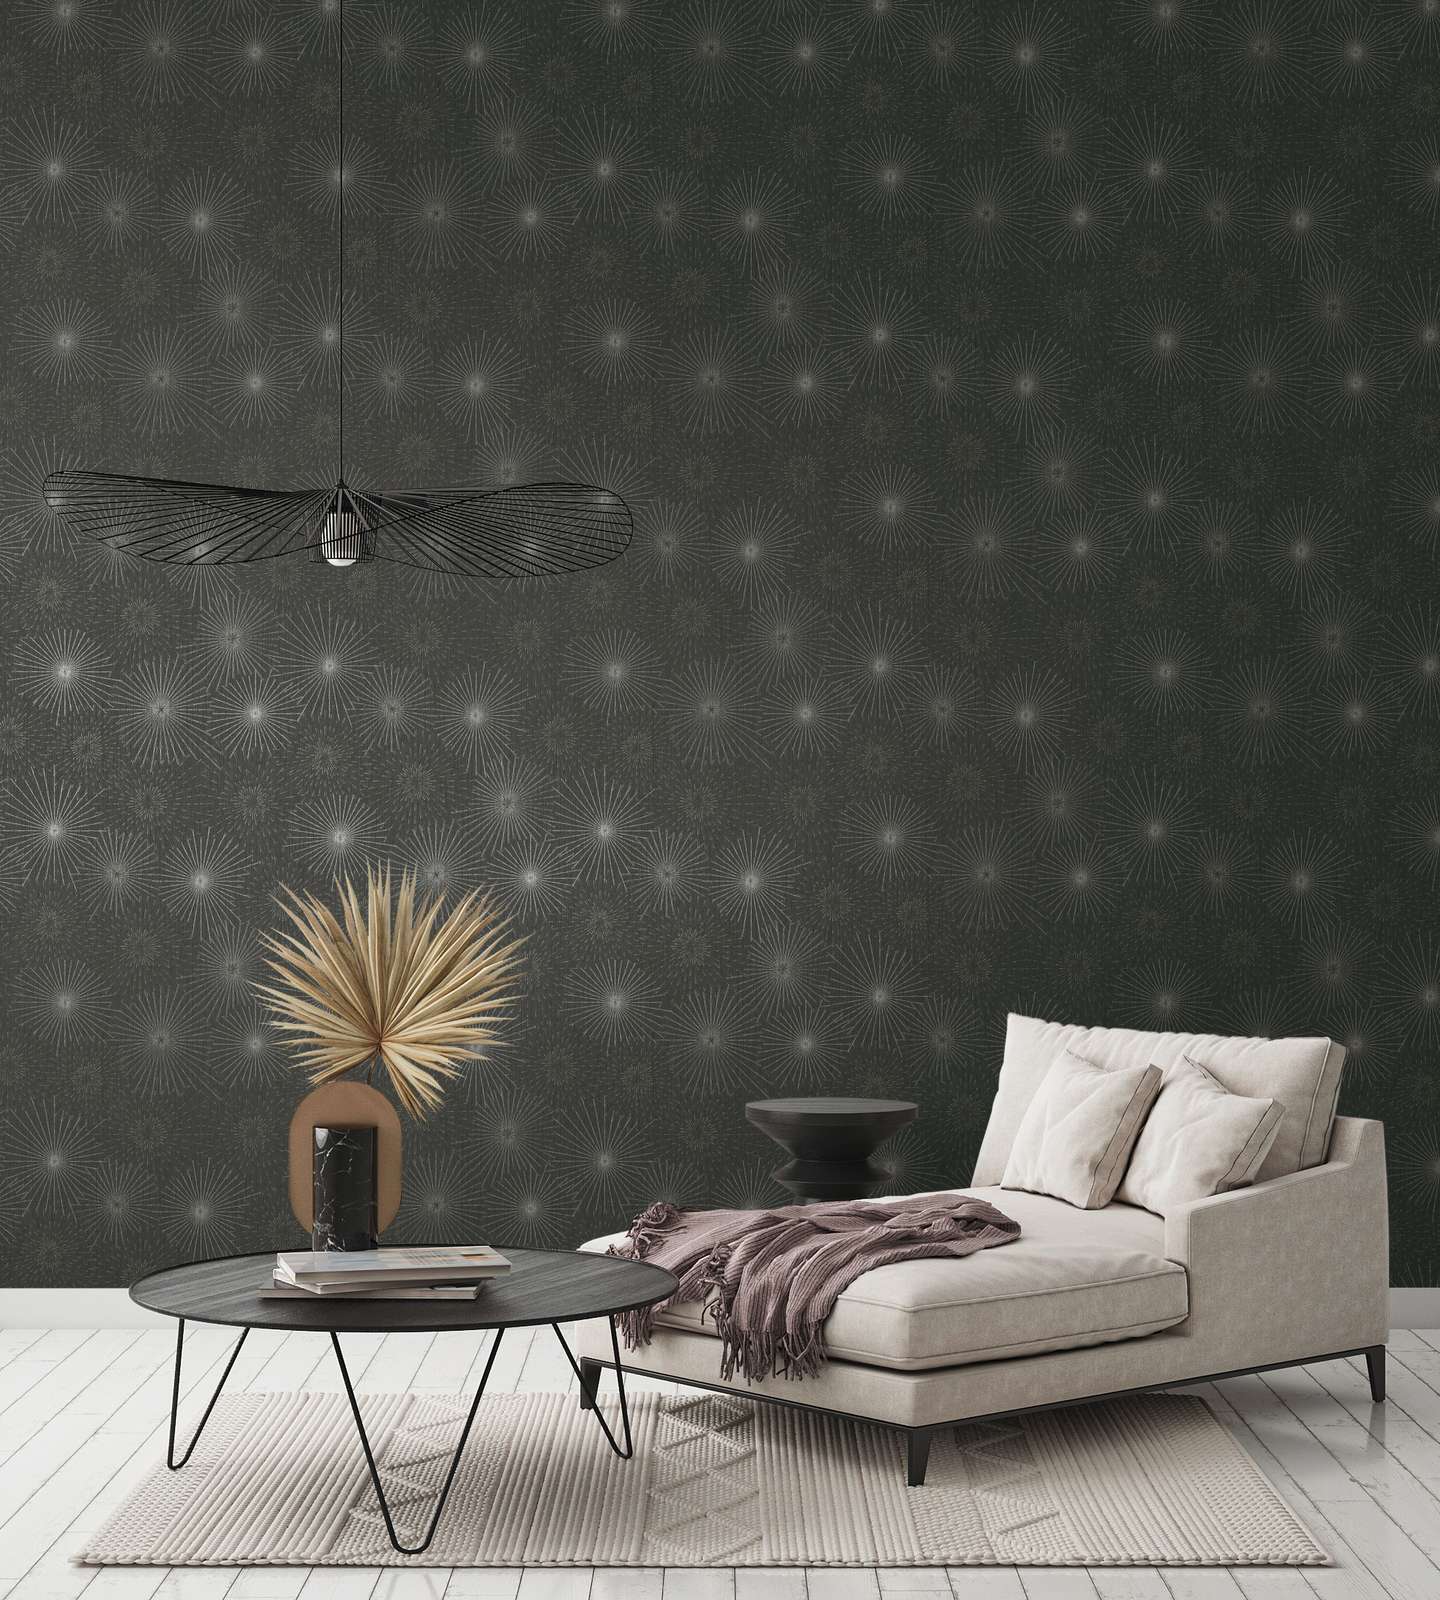             Retro wallpaper 50s starburst motif - black, metallic
        